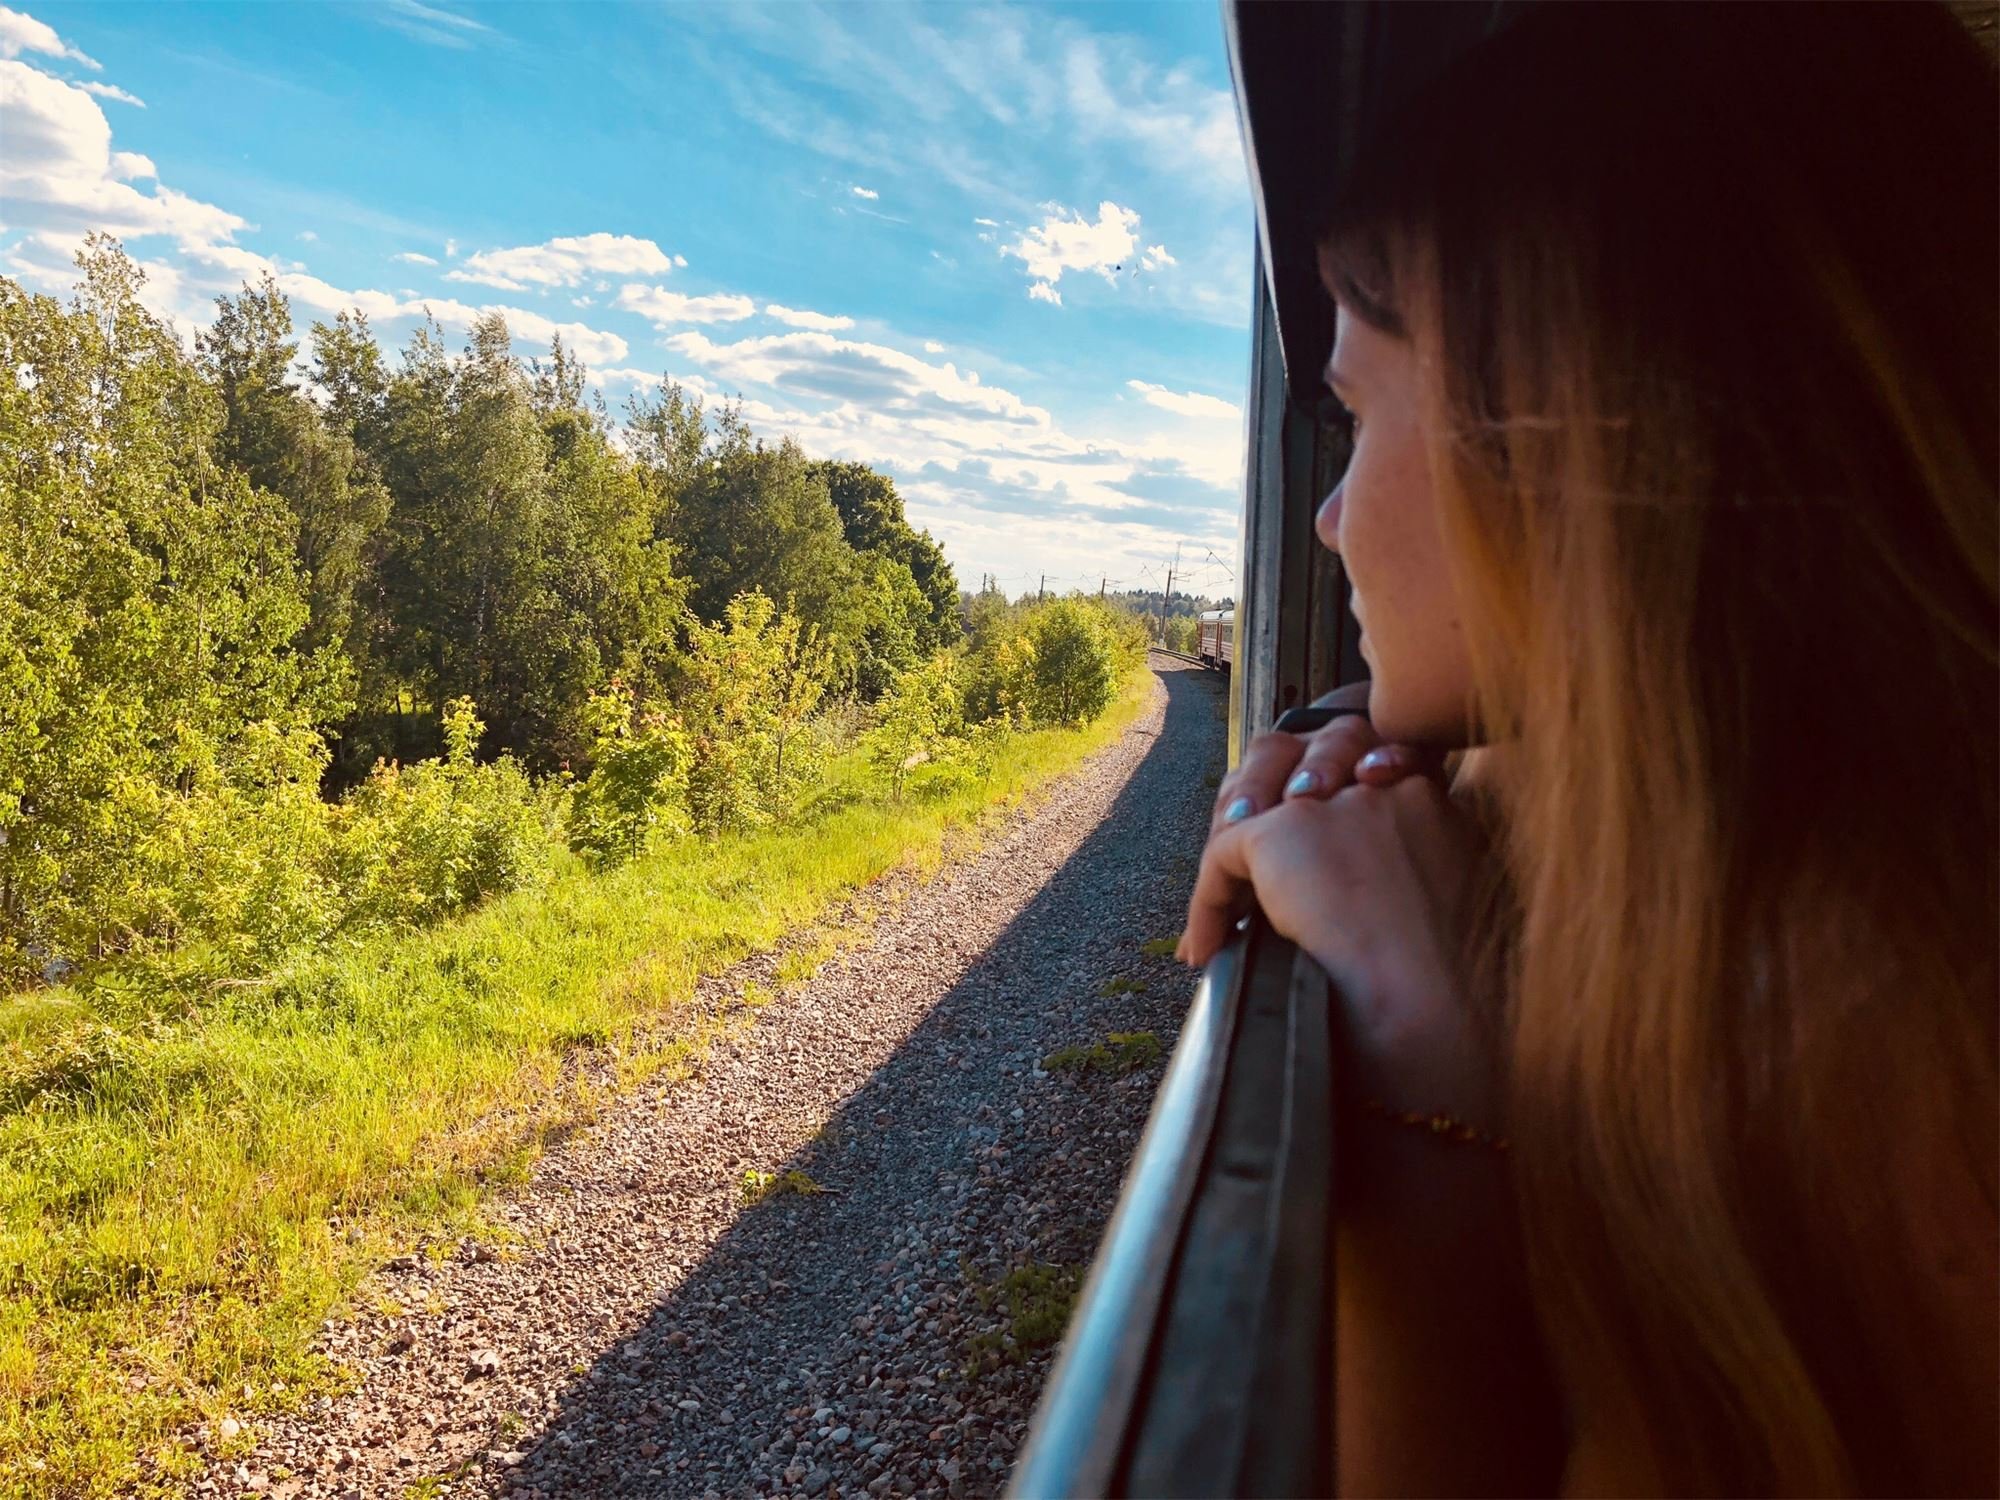 Вагон вошла она улыбнулась из окна. Вид из окна поезда. Красивый вид из поезда. Окно поезда. Красивый вид из окна поезда.